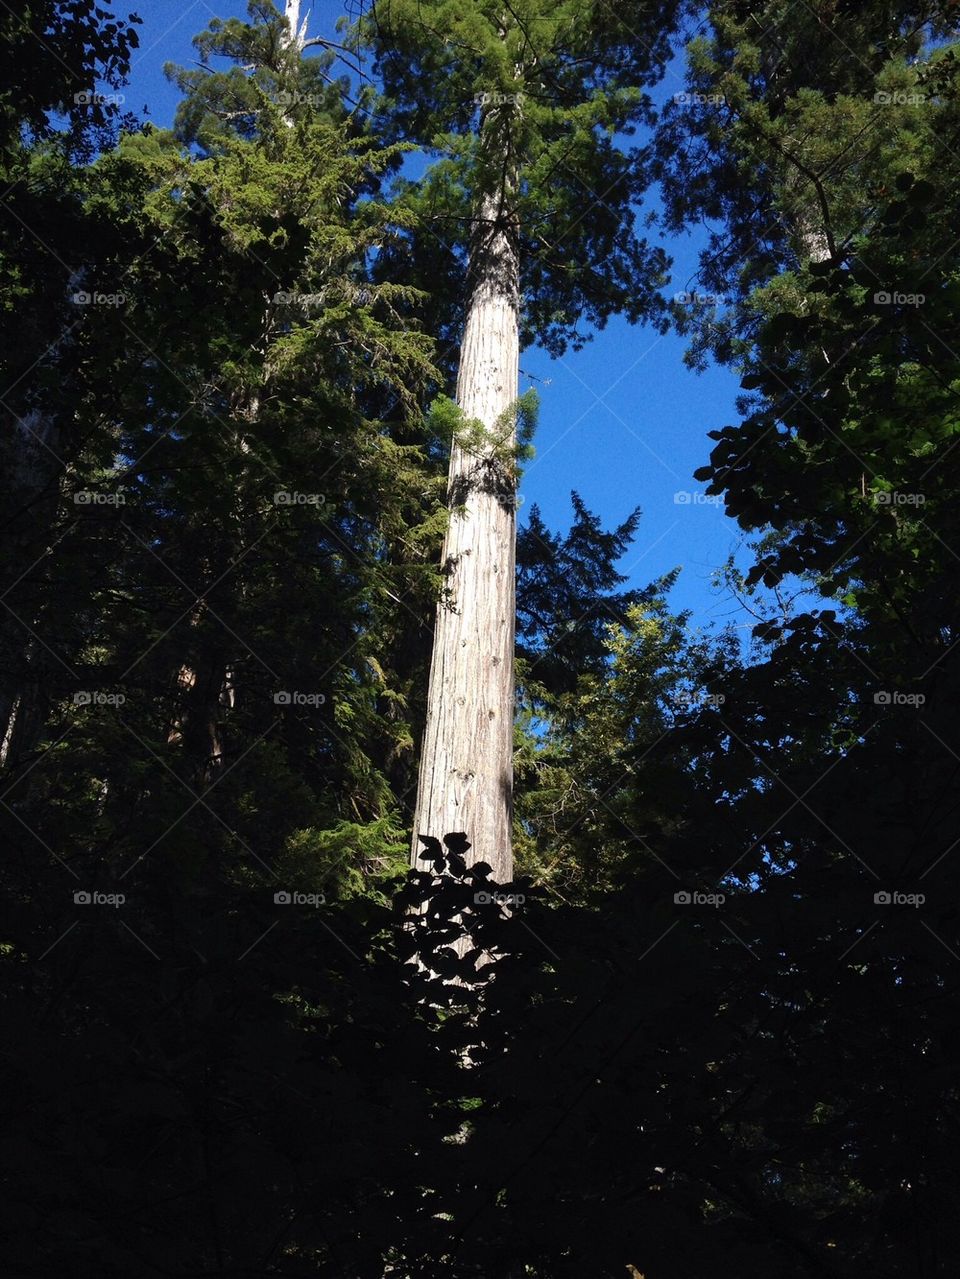 Giant redwood tree